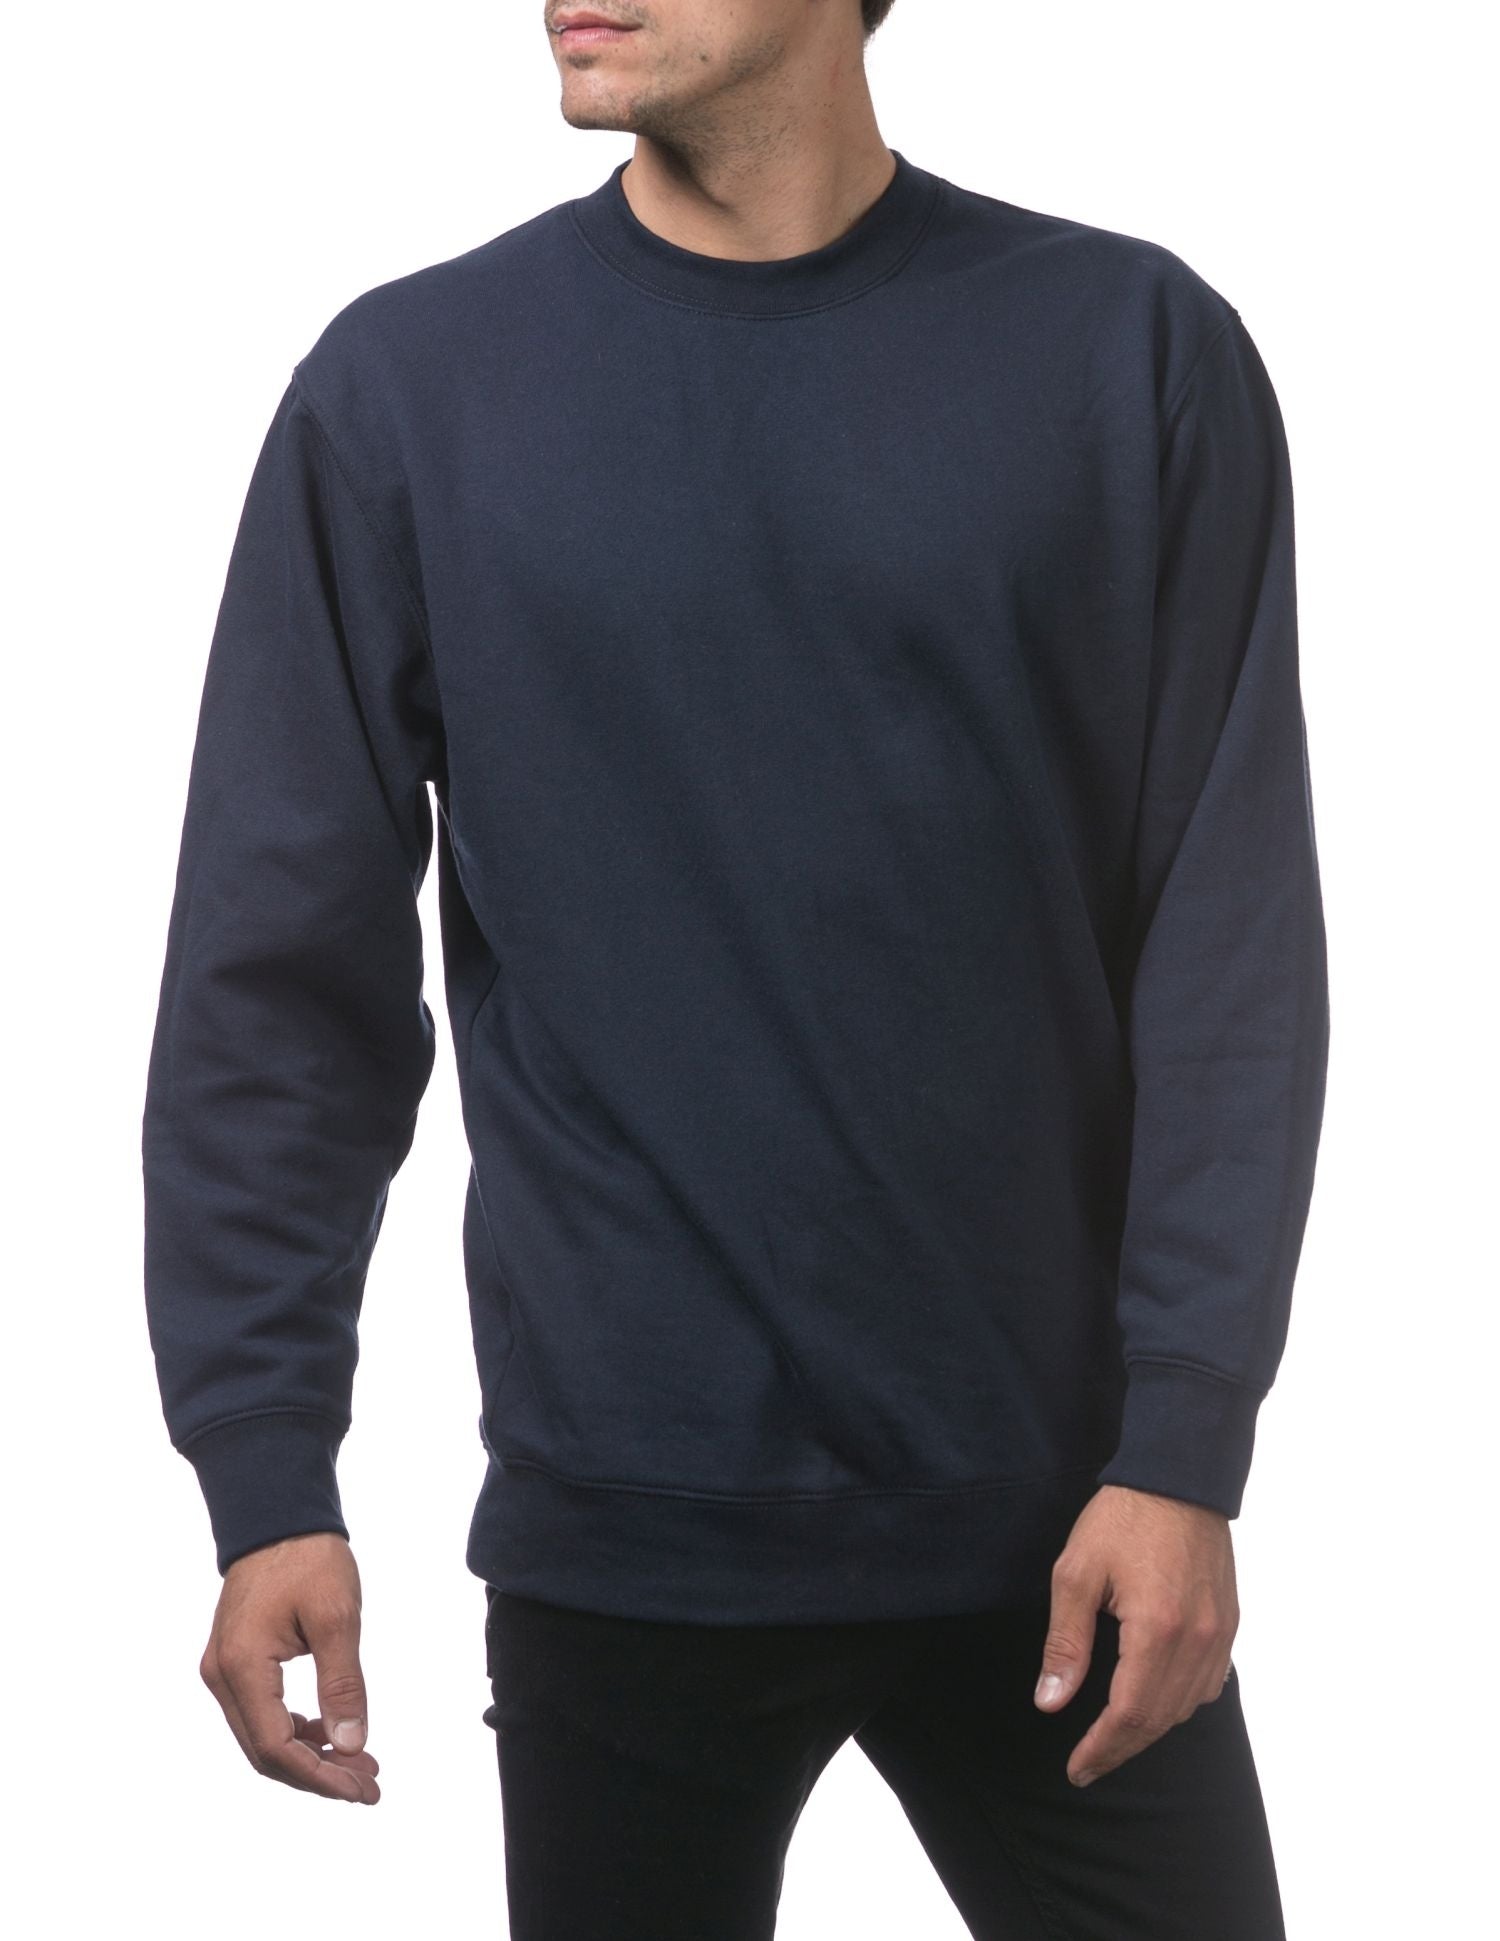 Pro Club Men's Comfort Crew Neck Fleece Pullover Sweater - Navy - Medium - Pro-Distributing